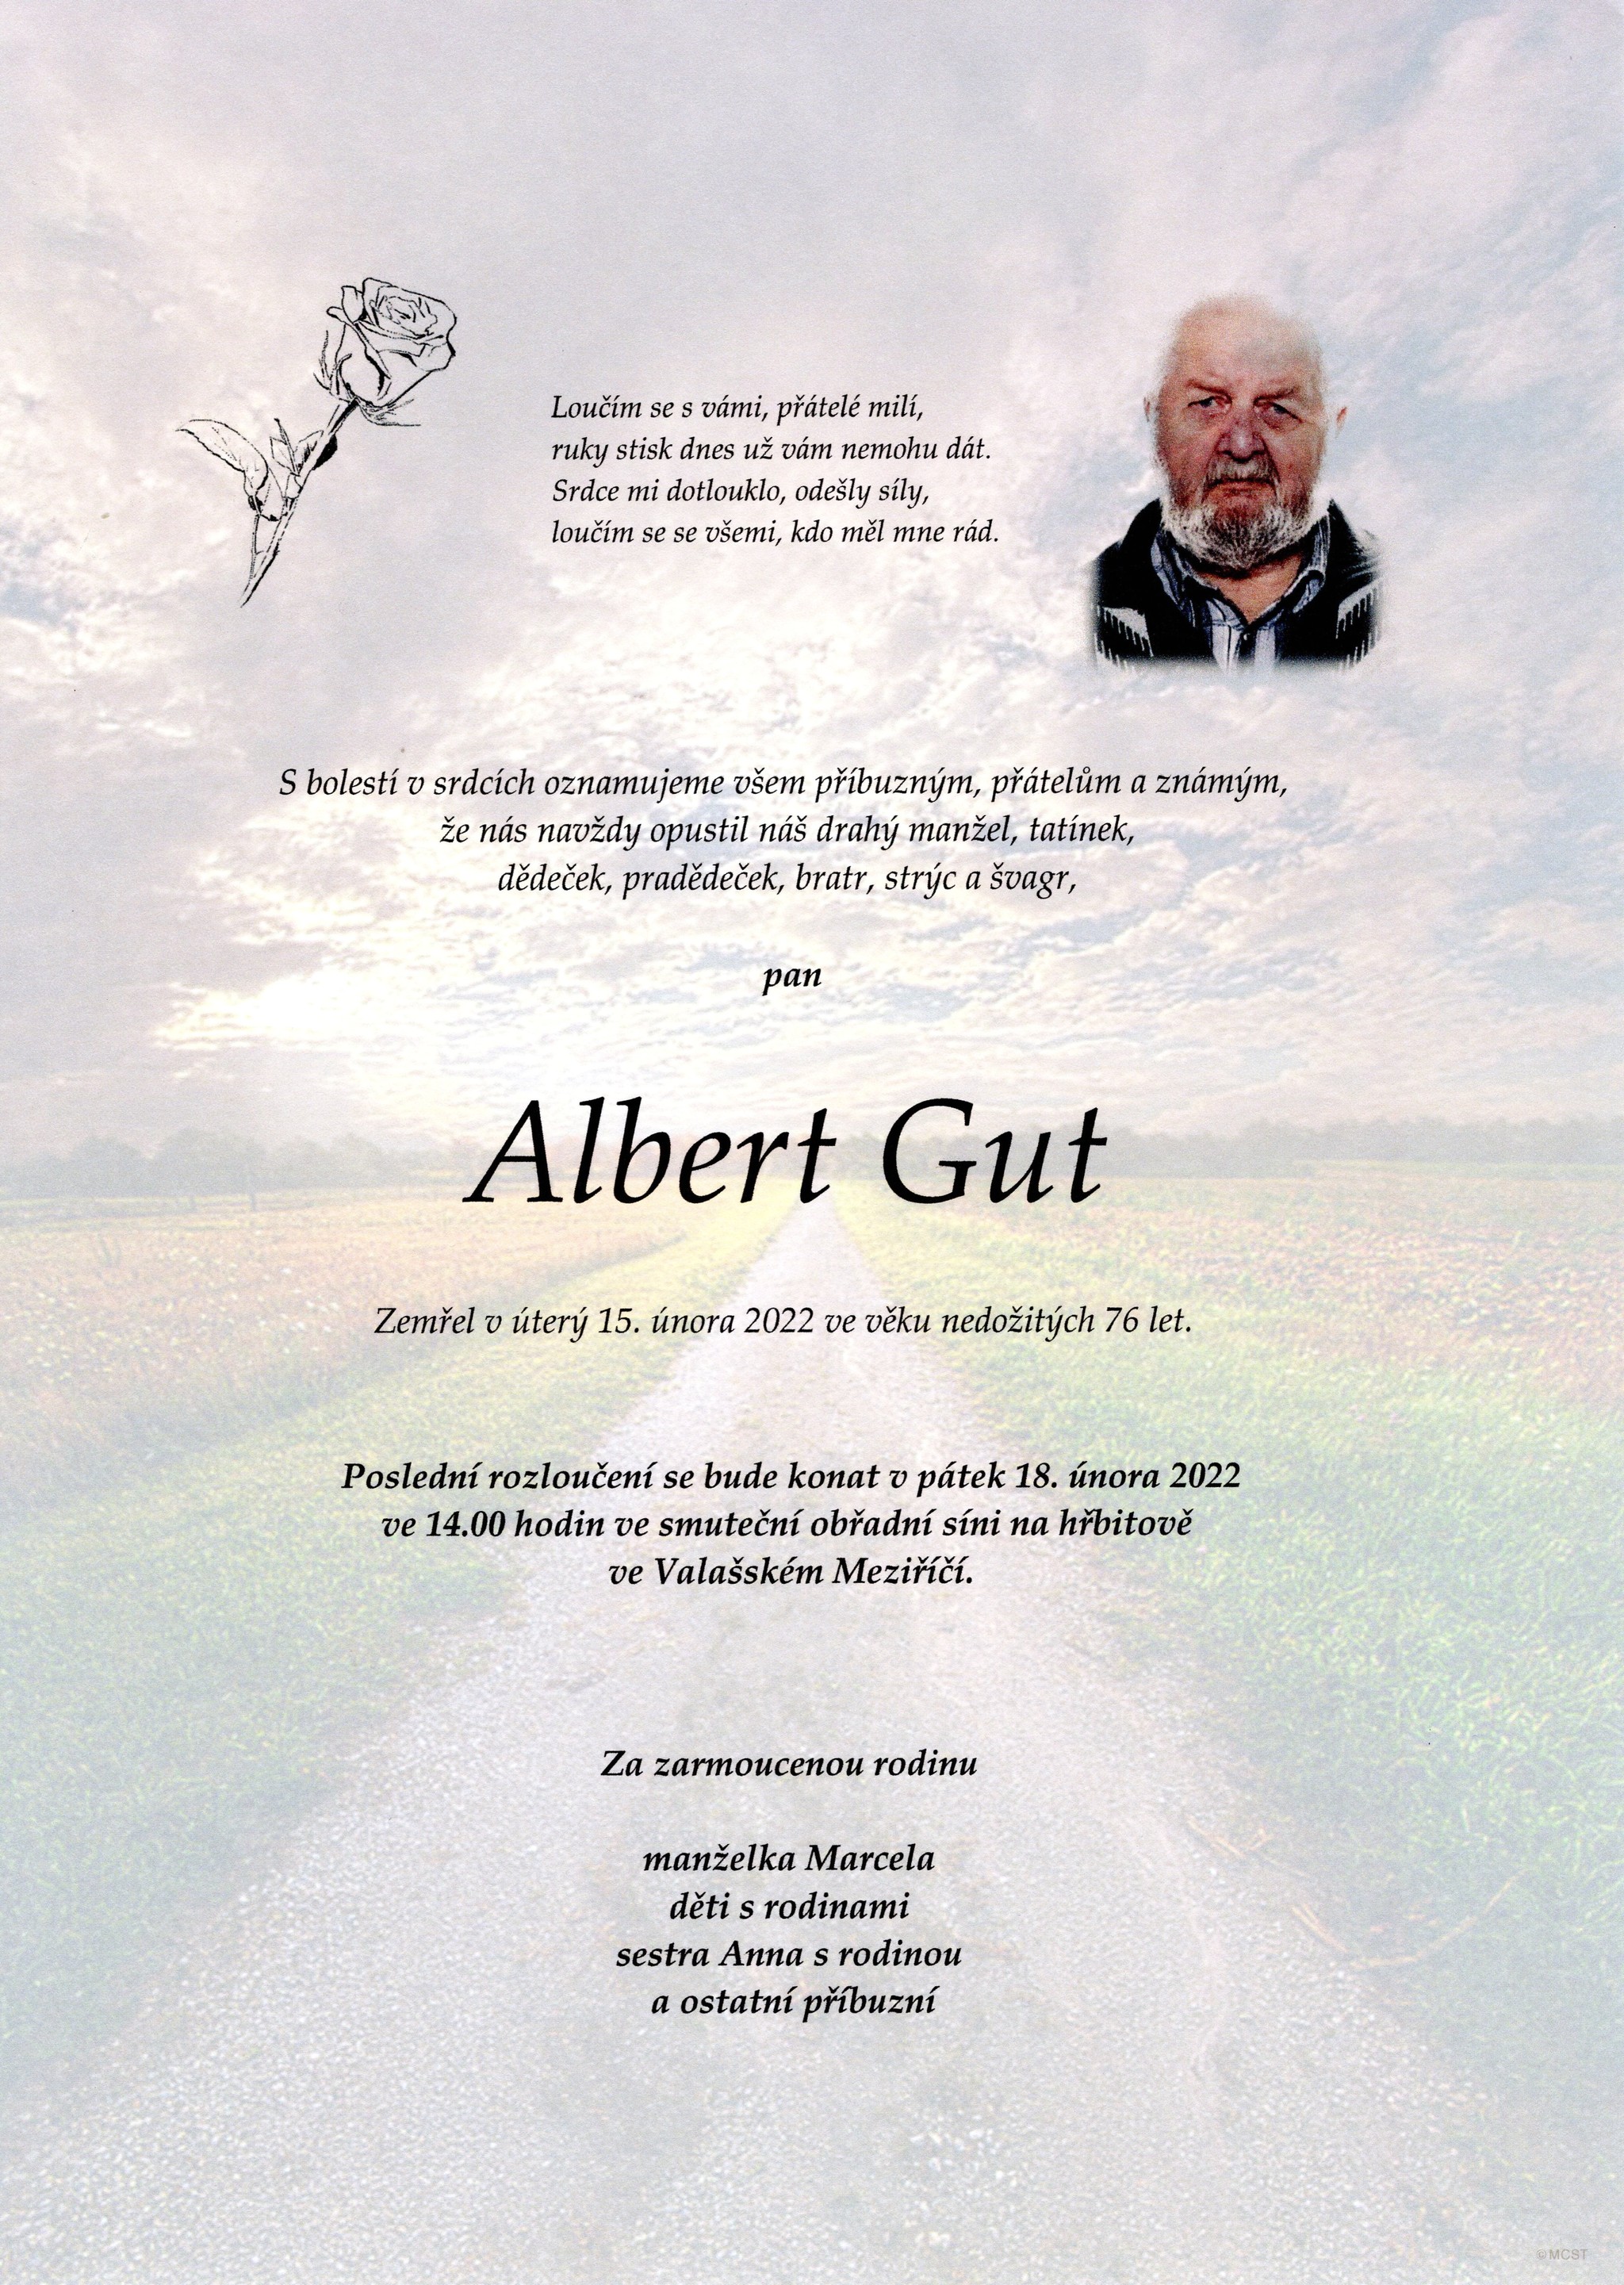 Albert Gut